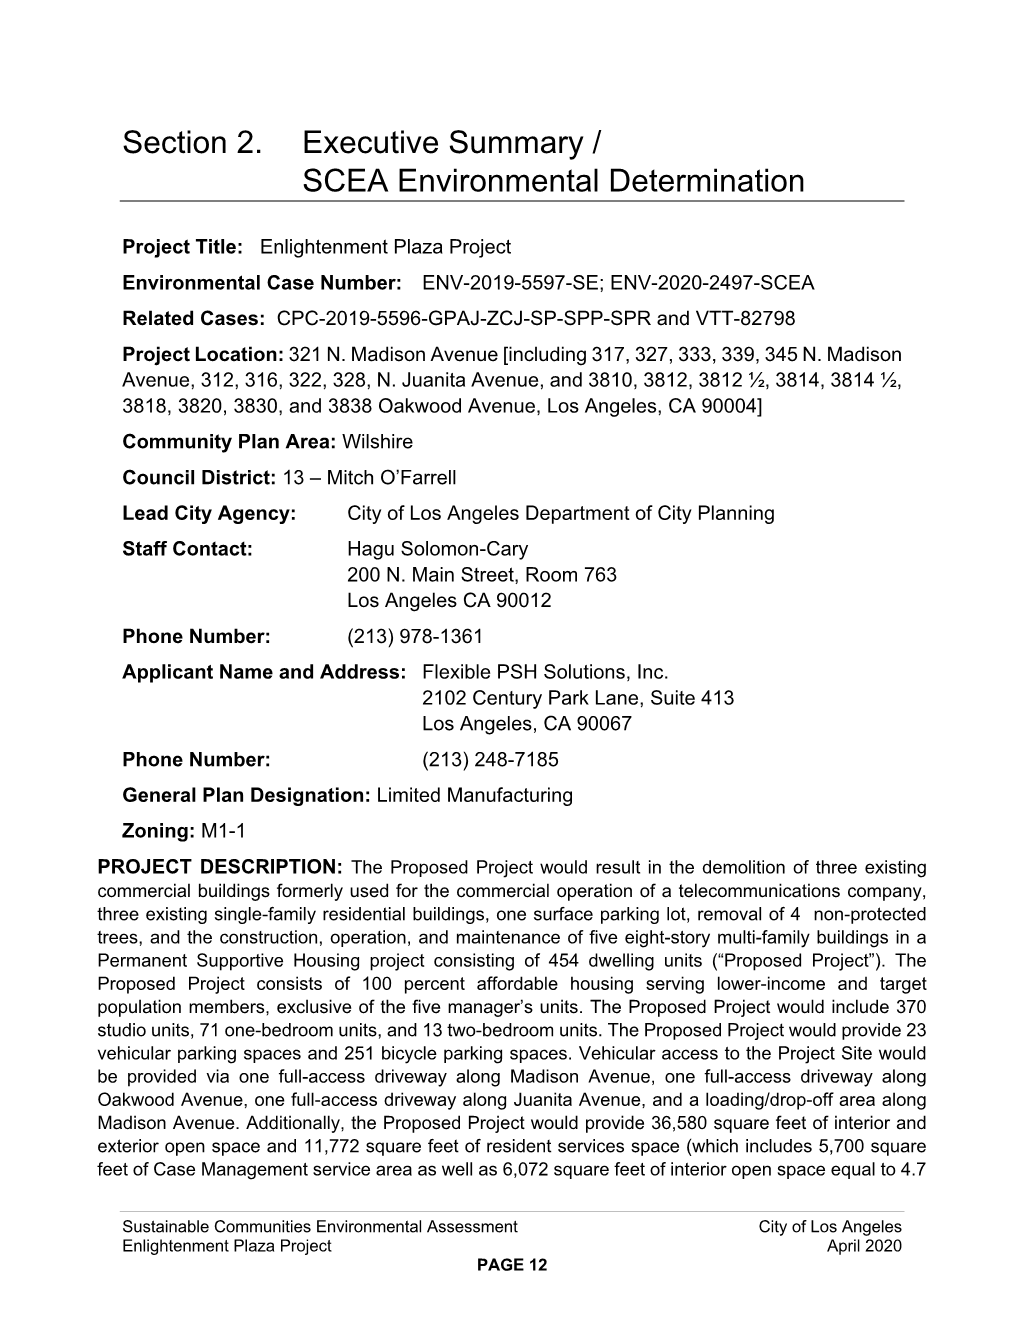 Section 2. Executive Summary / SCEA Environmental Determination